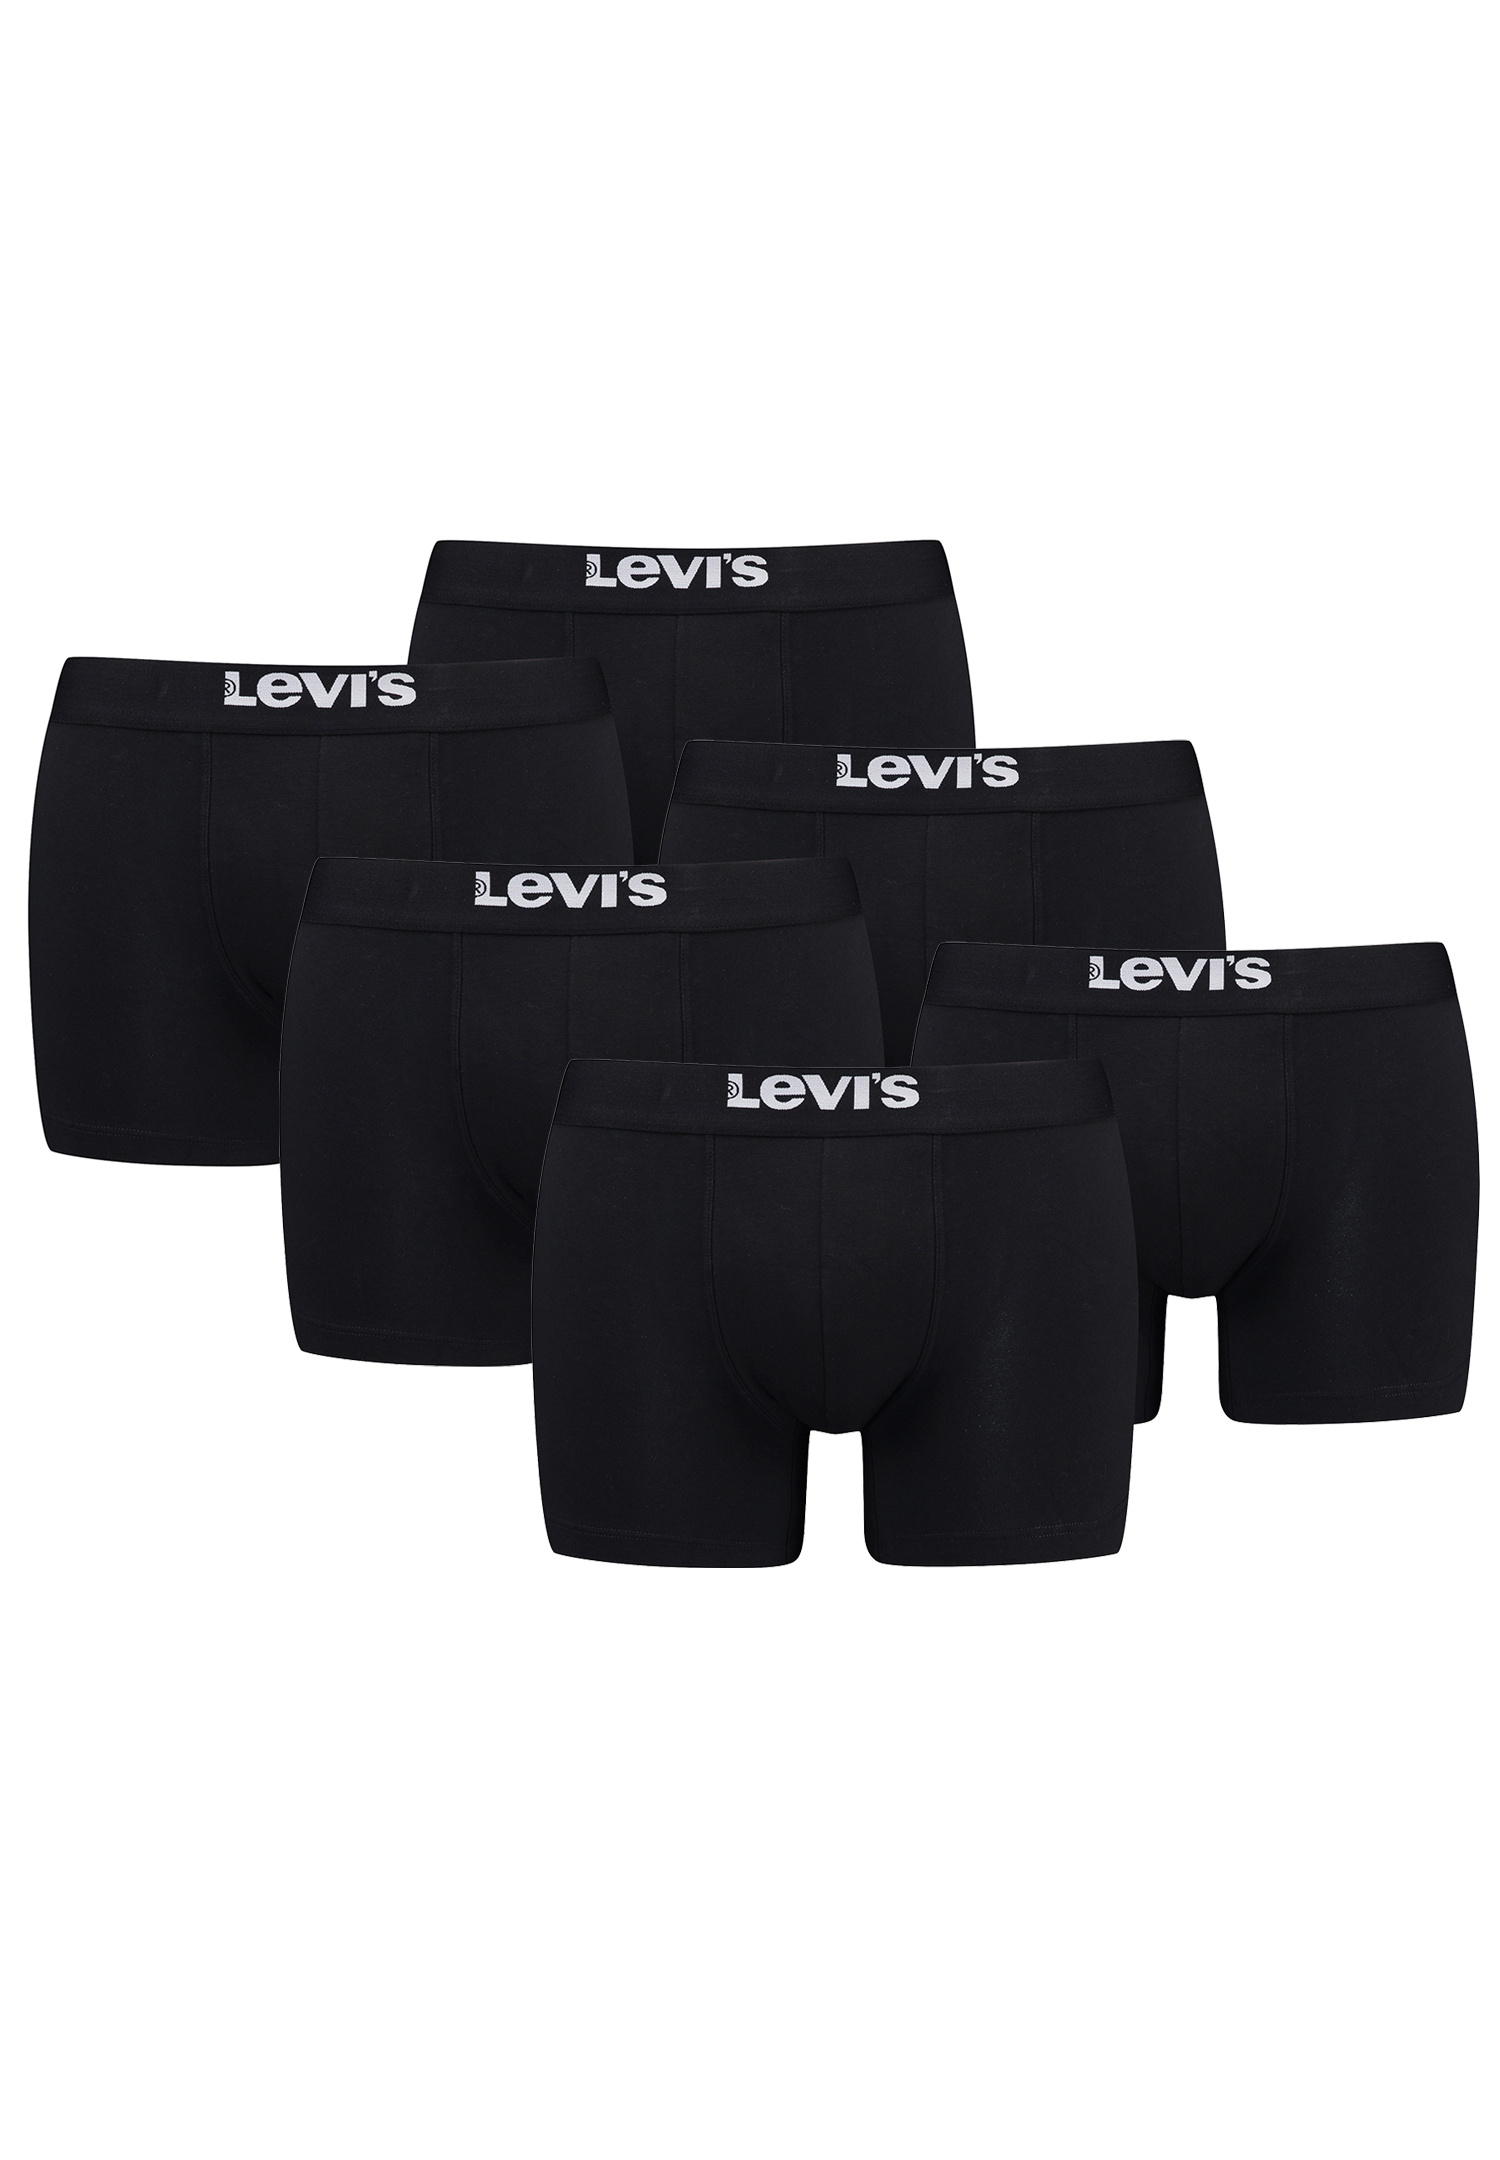 Levi's Solid Herren Boxershorts Unterwäsche aus Bio-Baumwolle im 6er Pack